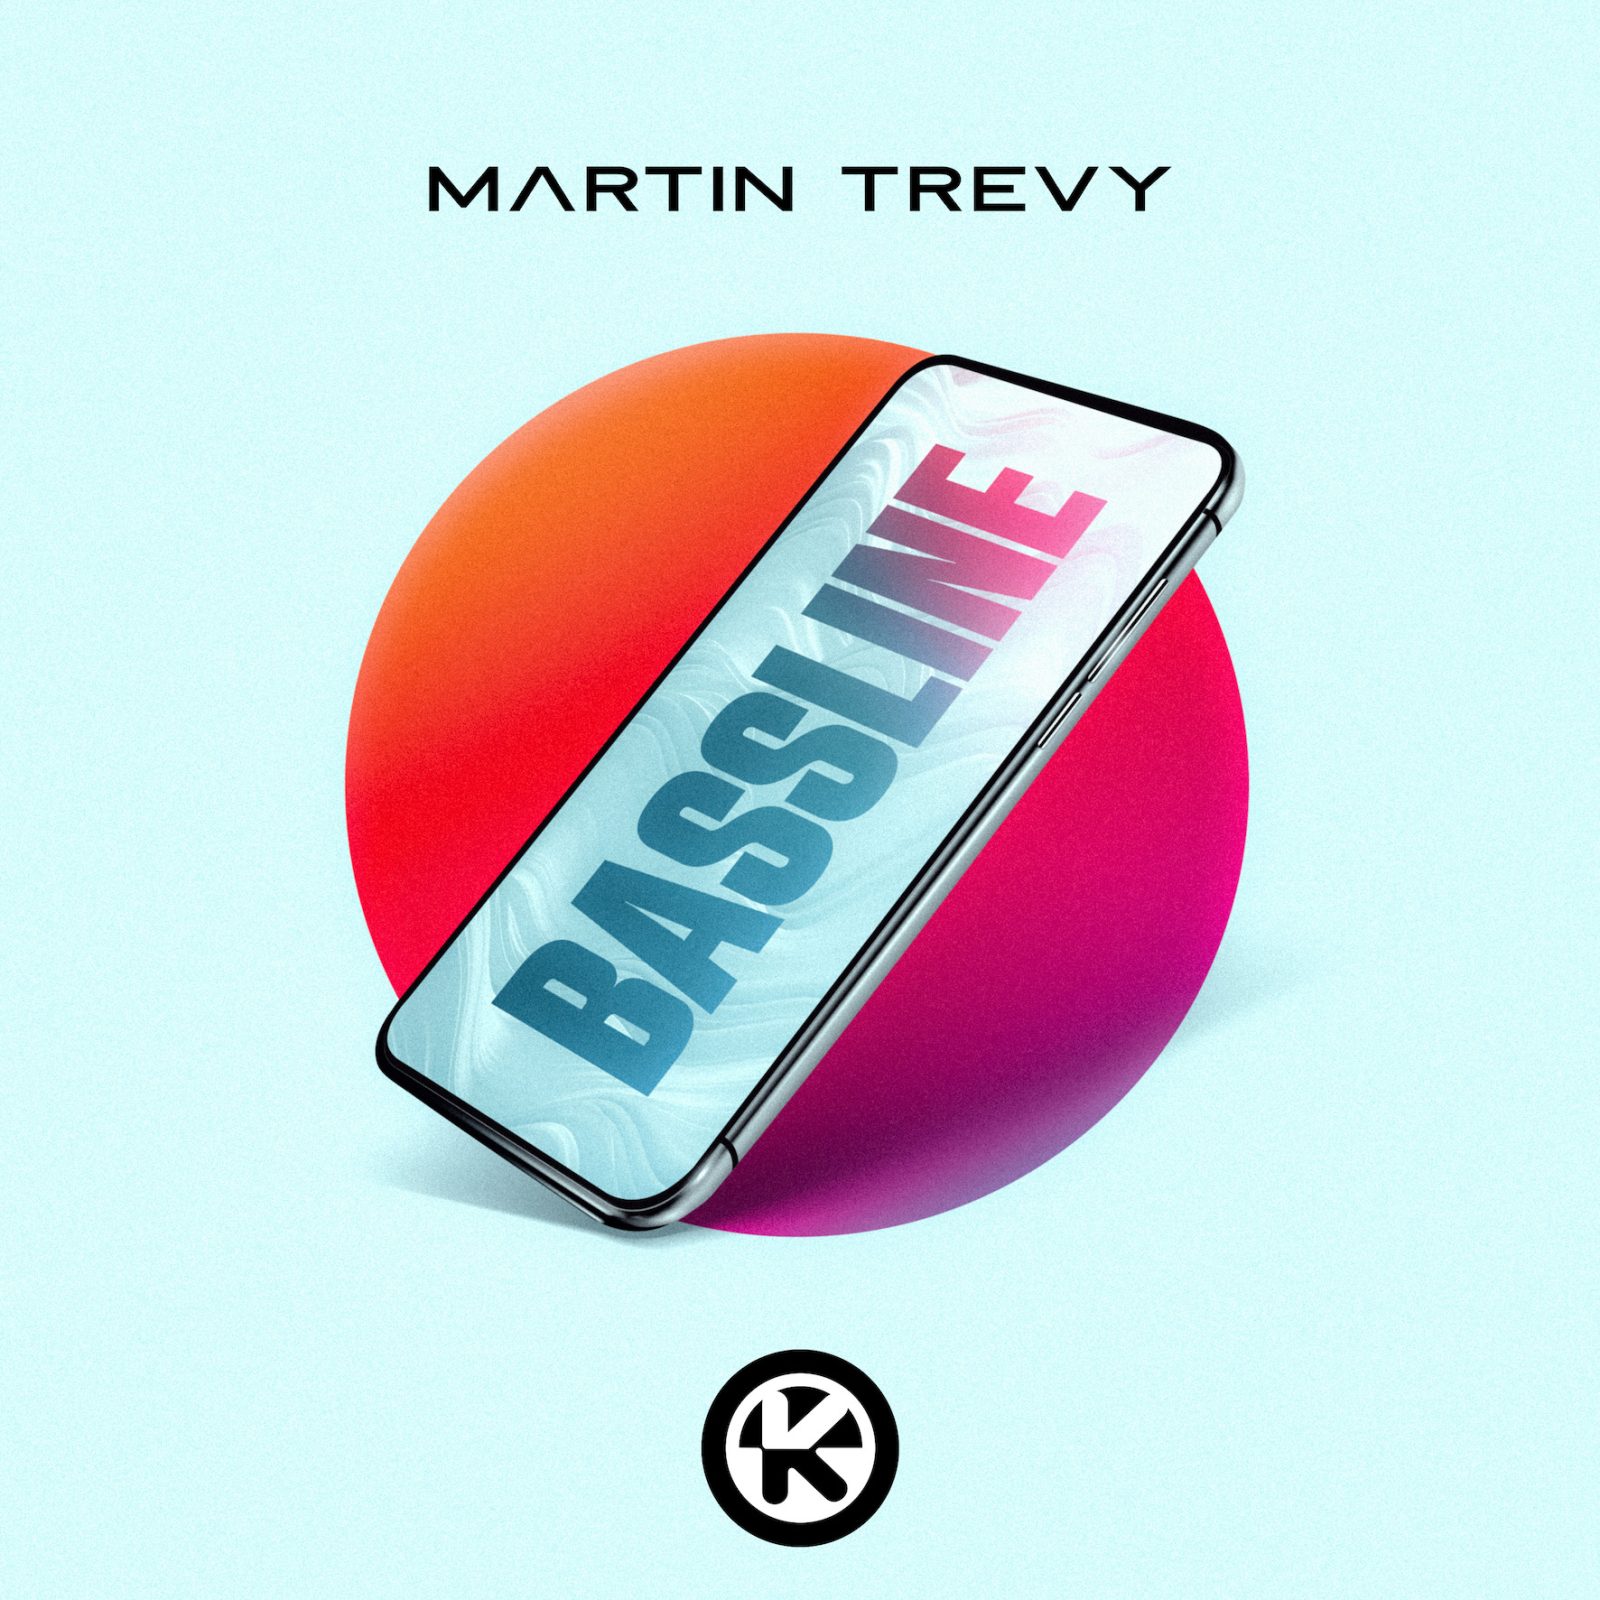 Martin Trevy "Bassline"